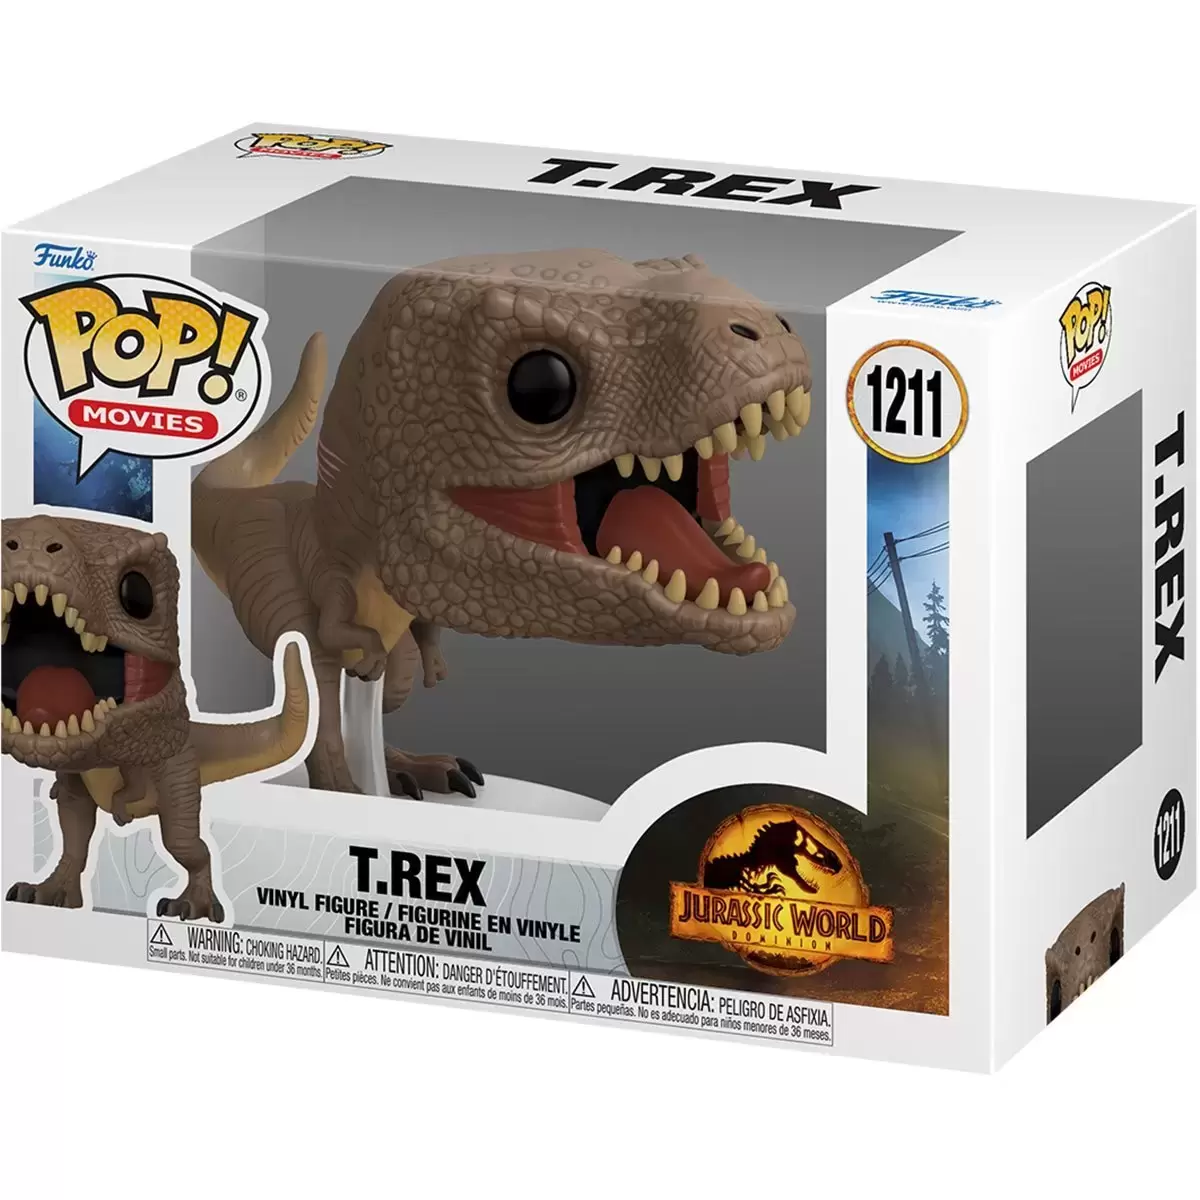 POP! Movies - Jurassic World Dominion - T.Rex